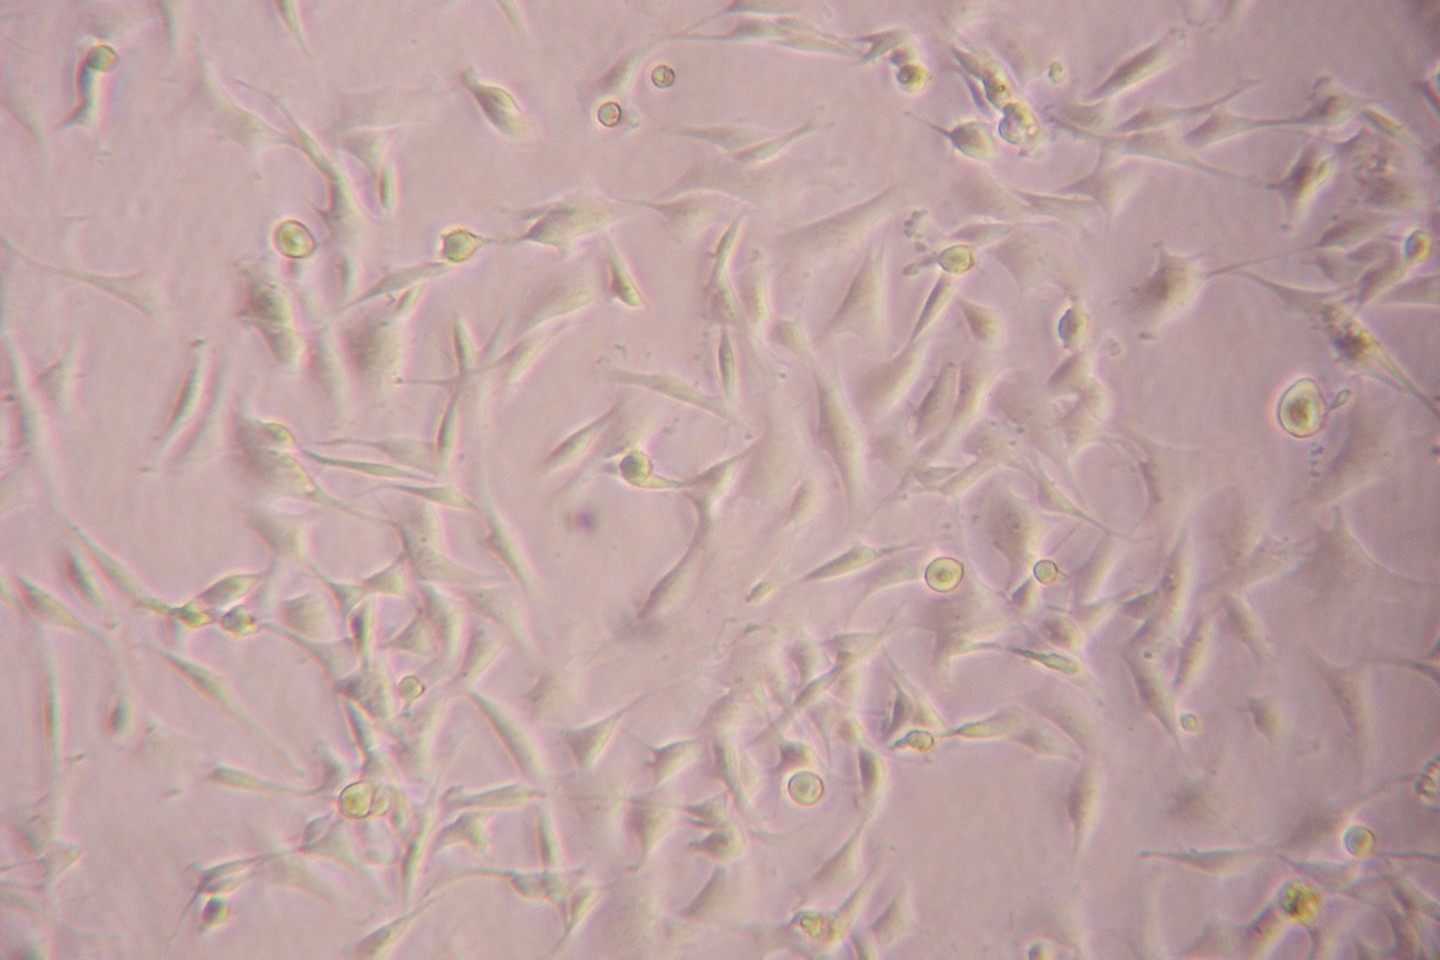  Taip po mikroskopu atrodo iš triušio griaučių raumens išskirtos kamieninės ląstelės.